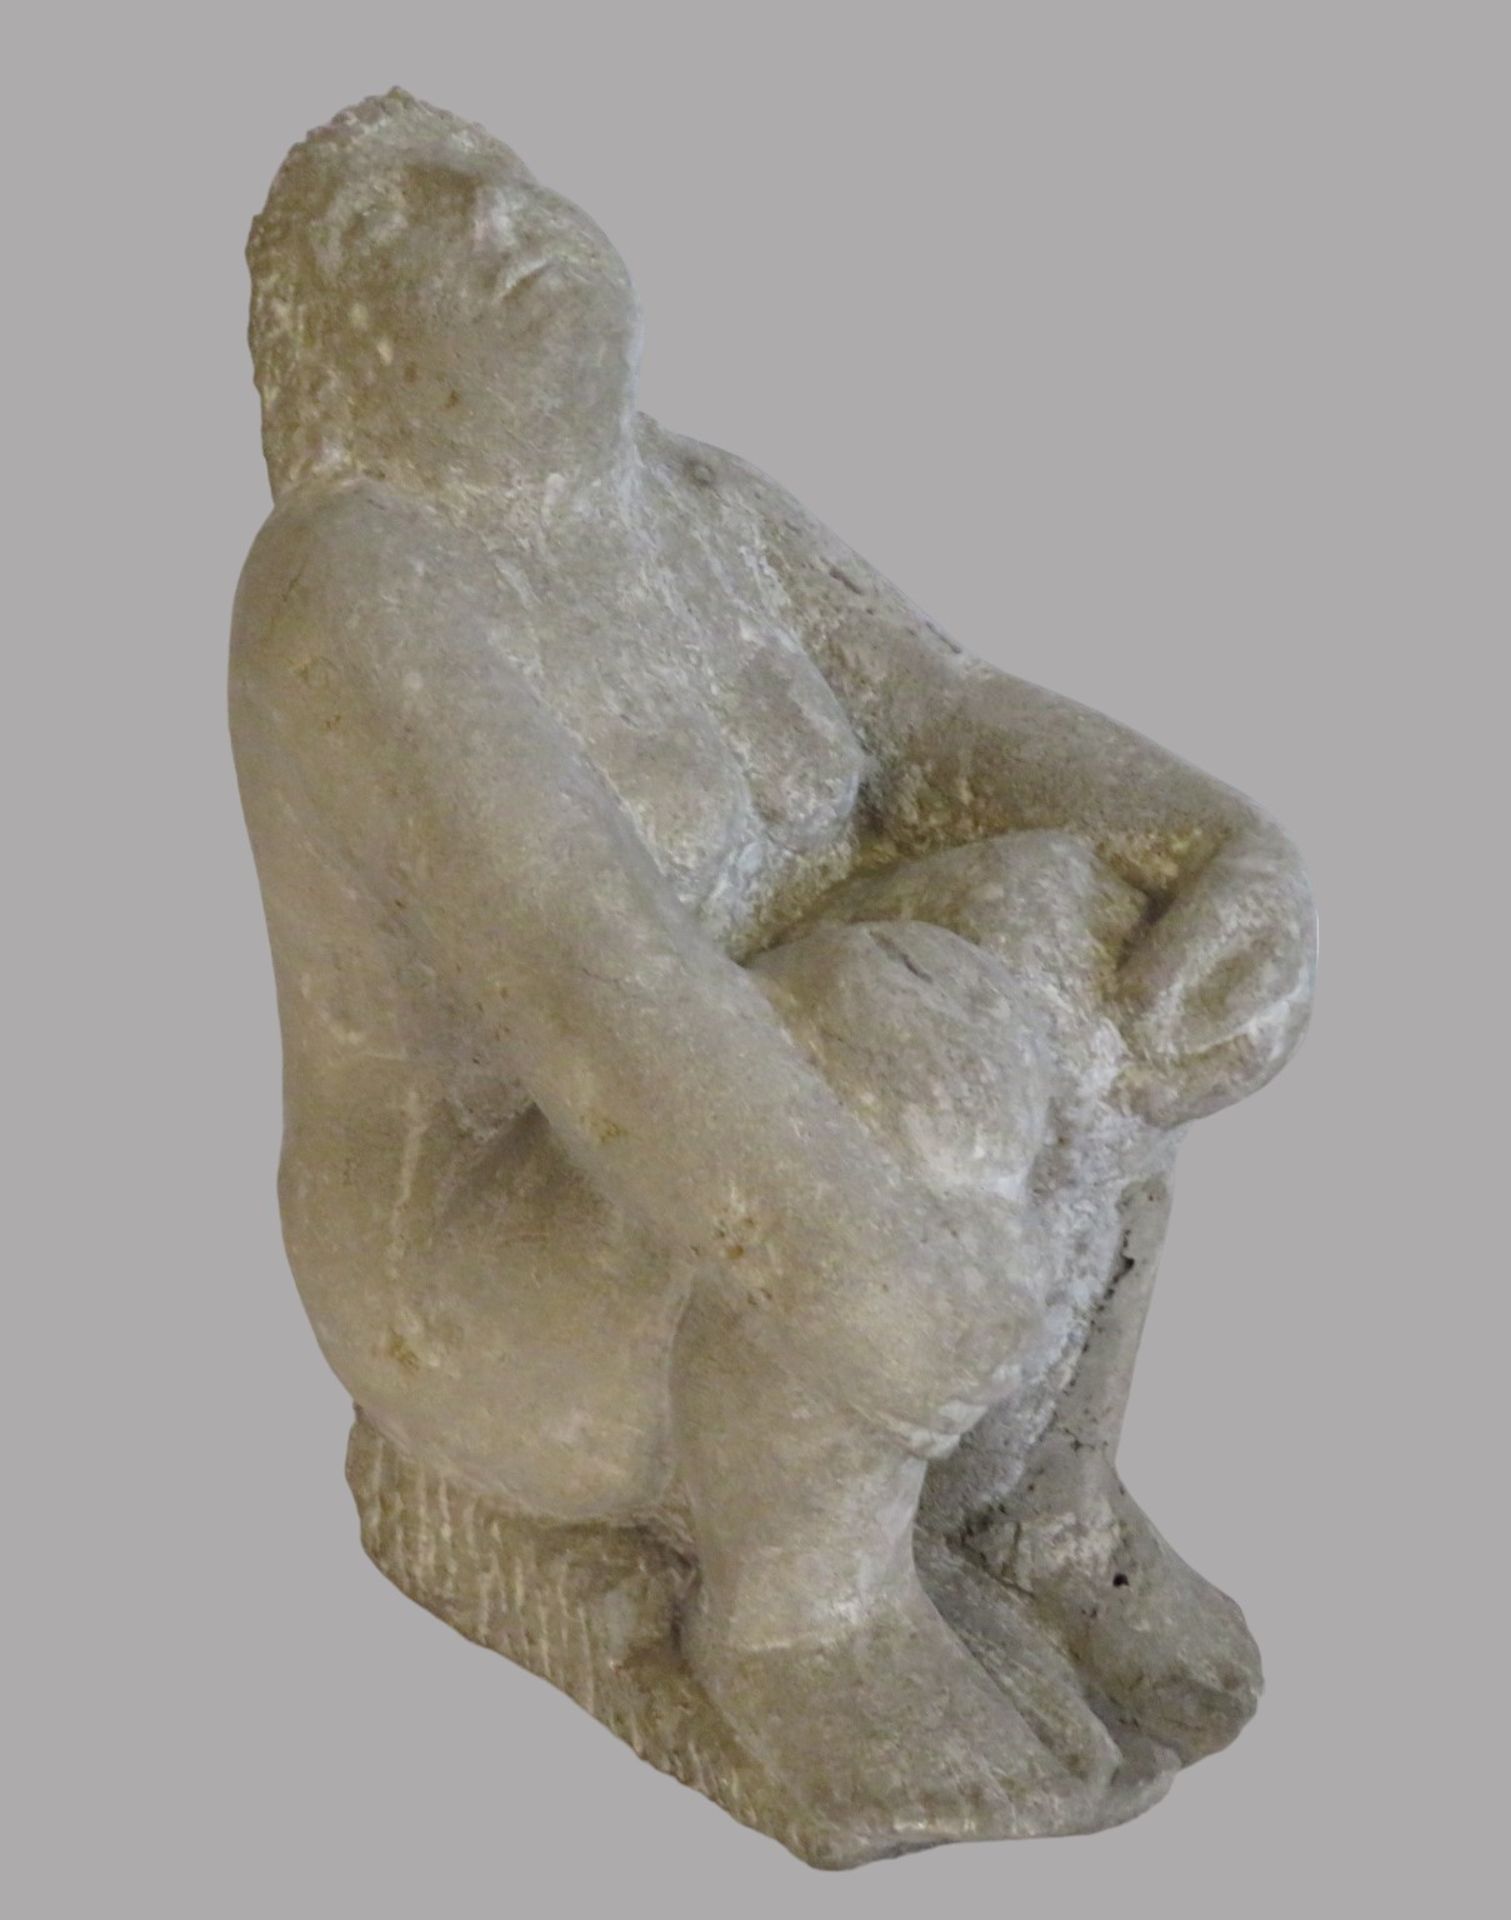 Unbekannt, Hockender, weiblicher Akt, Betonguss, 33,5 x 17 x 25 cm.